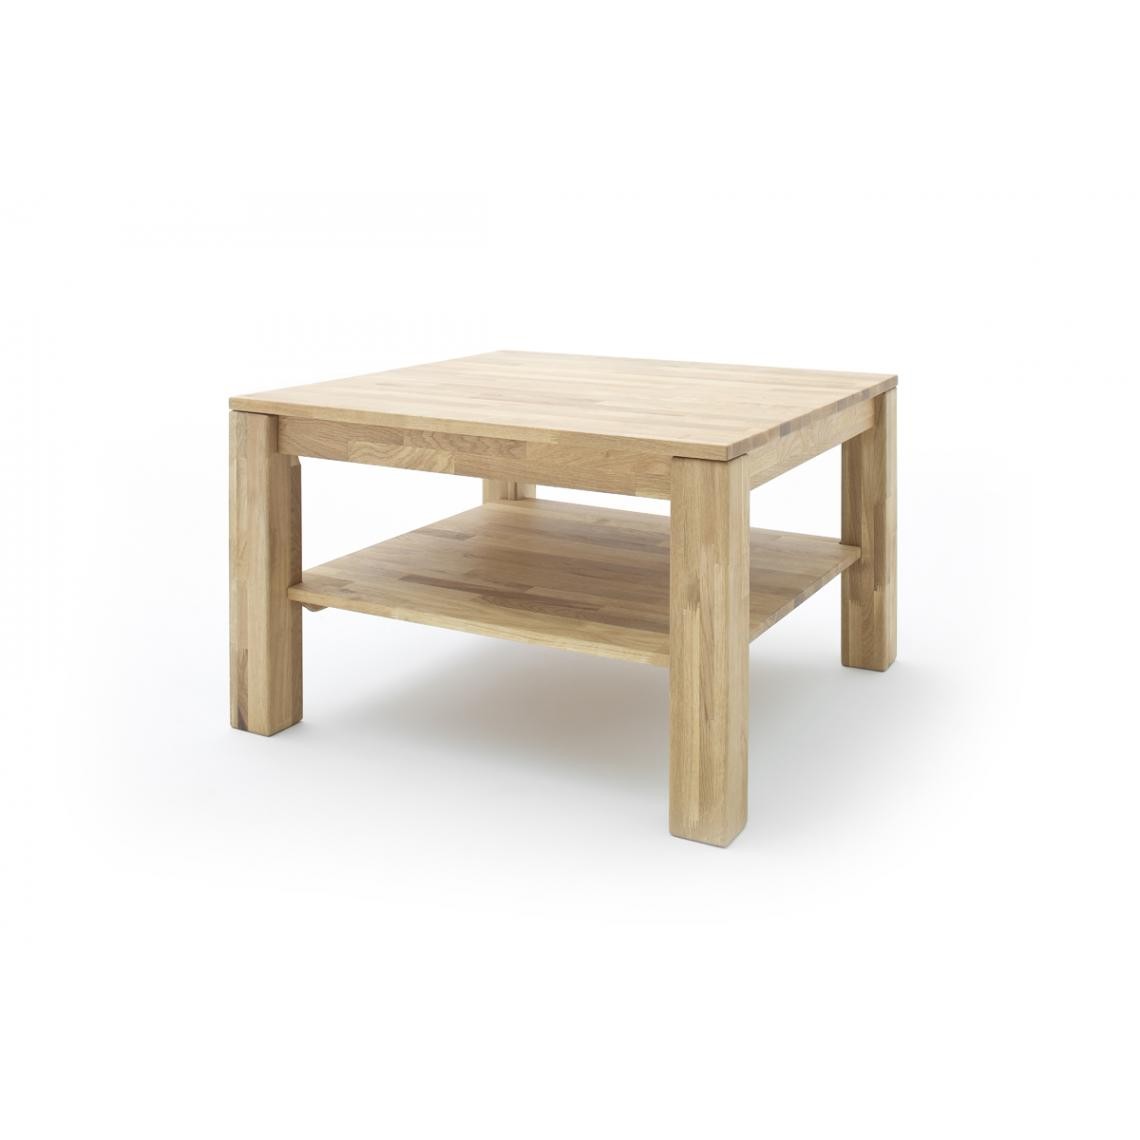 Pegane - Table basse en chêne noueux massif huilé avec tablette - L80 x H45 x P80 cm - Tables basses